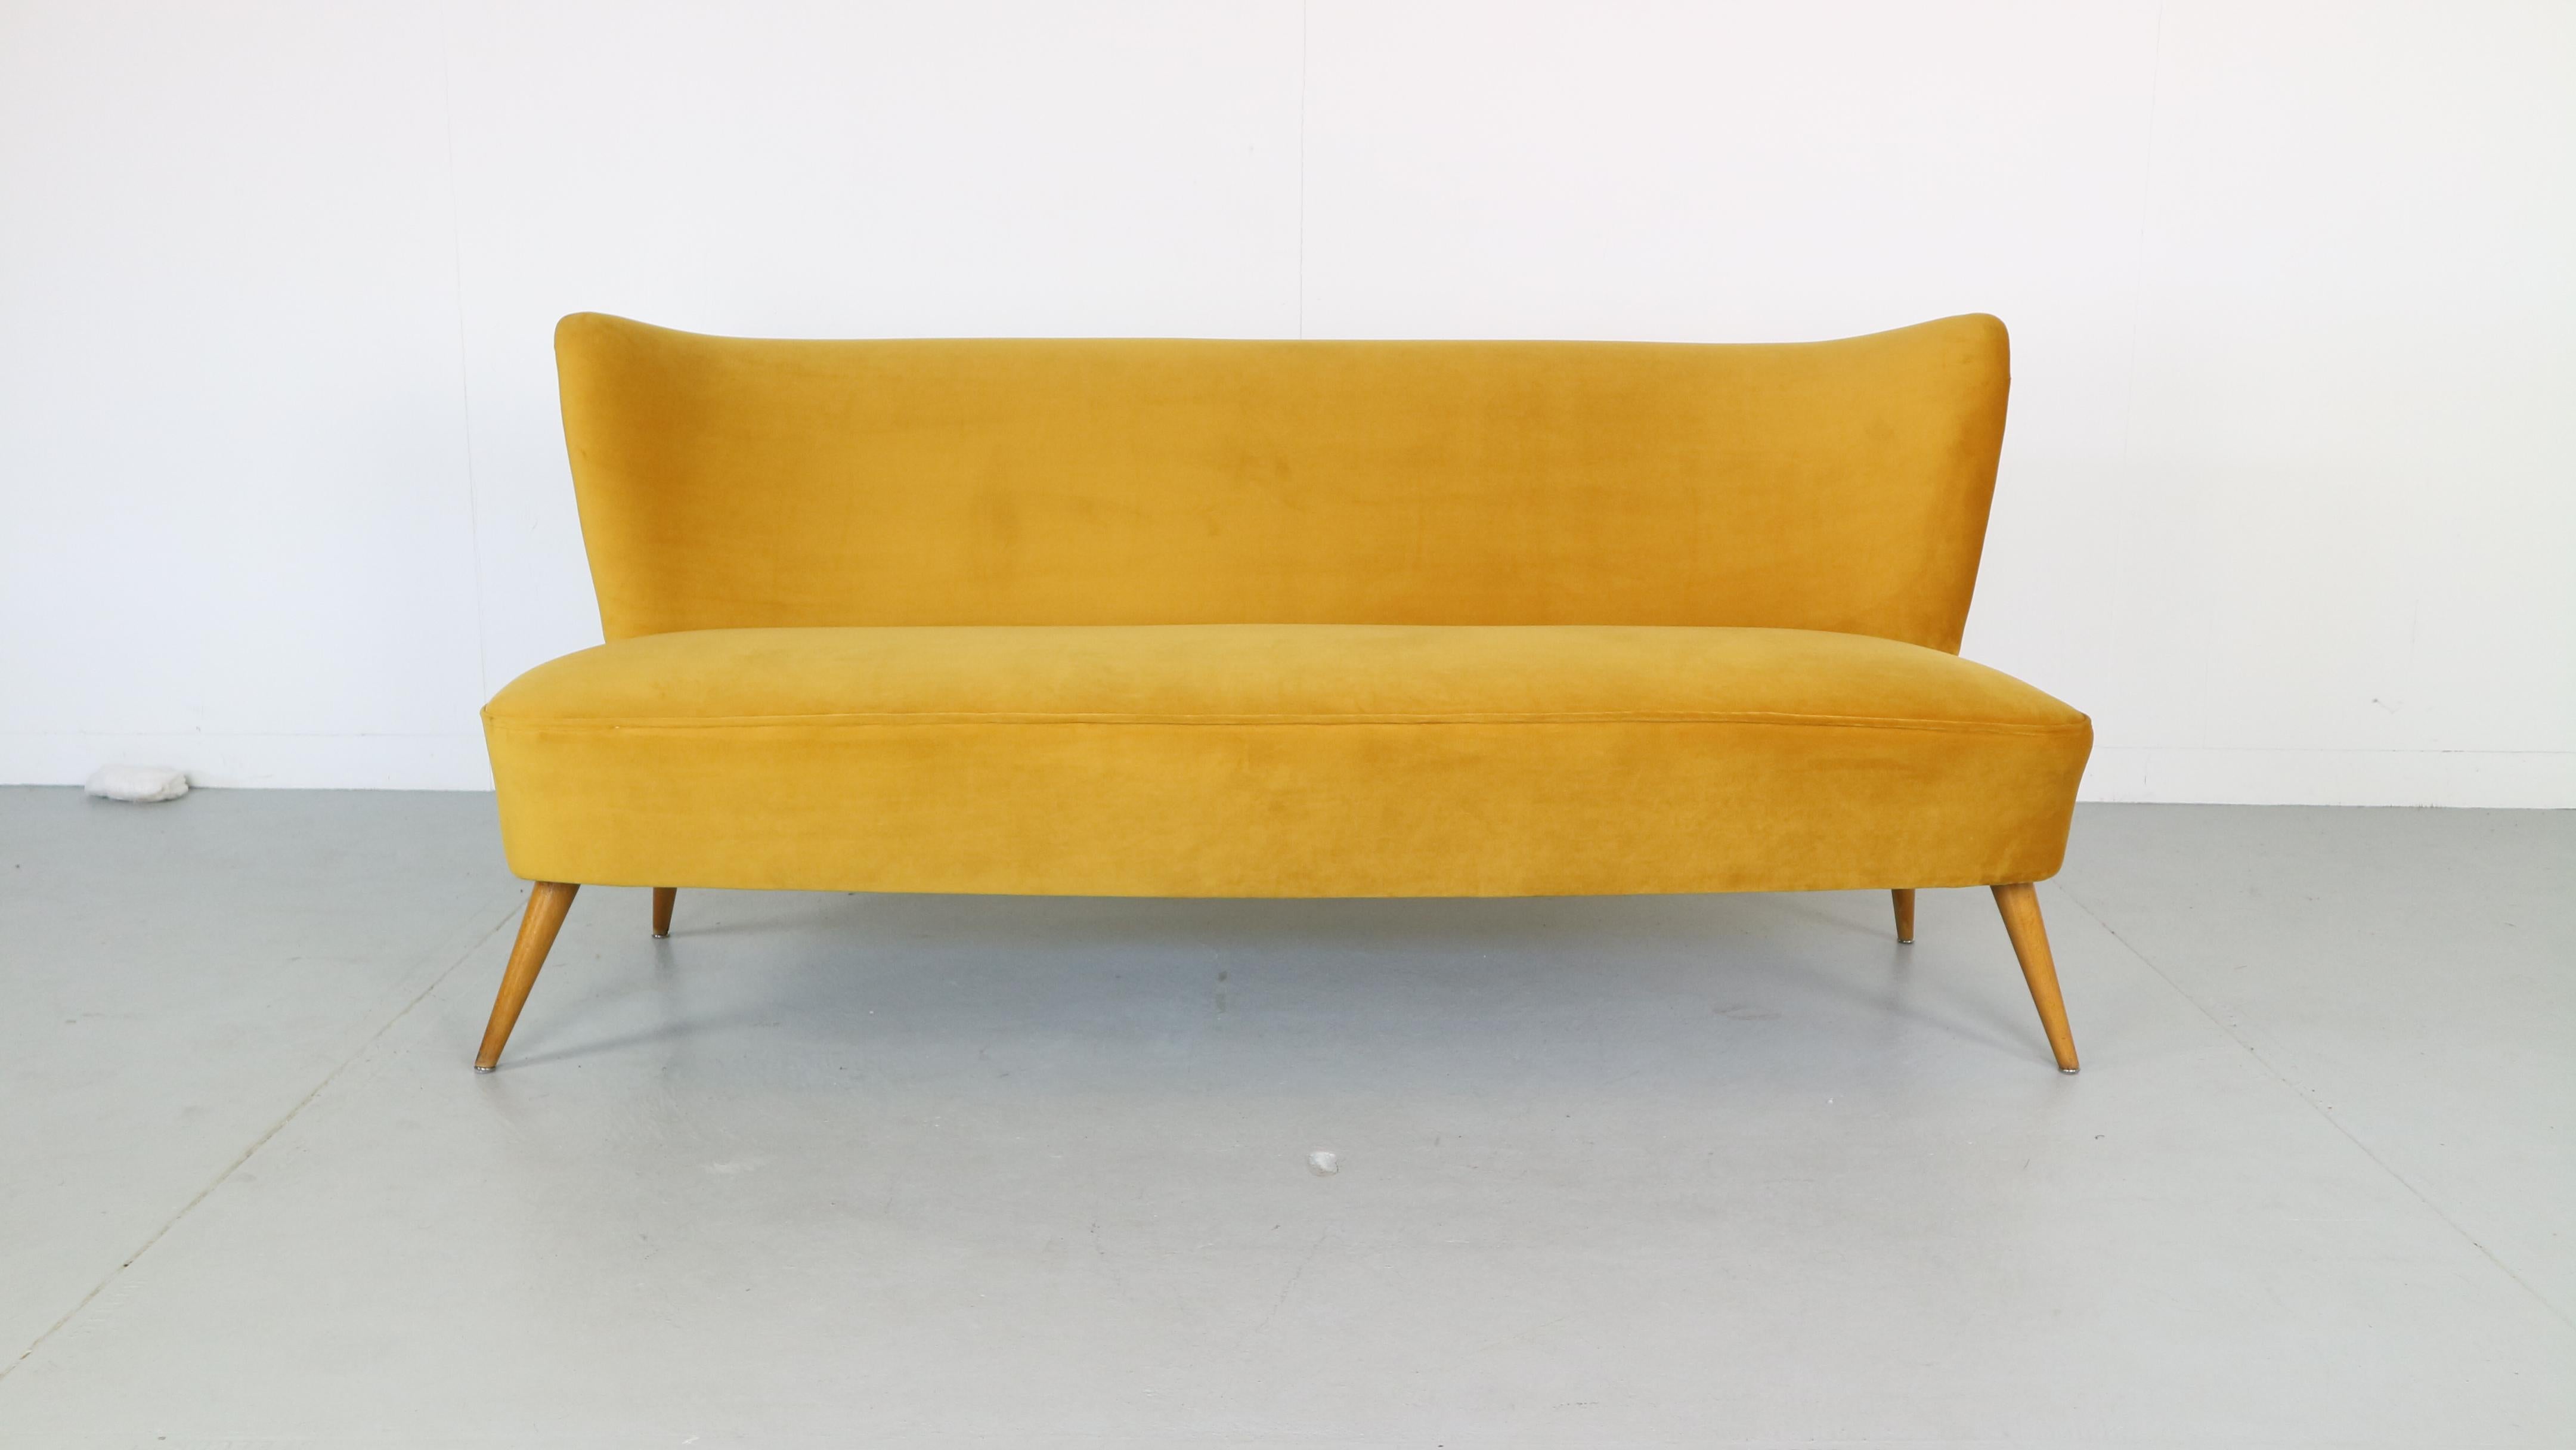 Newly upholstered 1950s sofa in ocher yellow velvet,
Germany, 1950s.